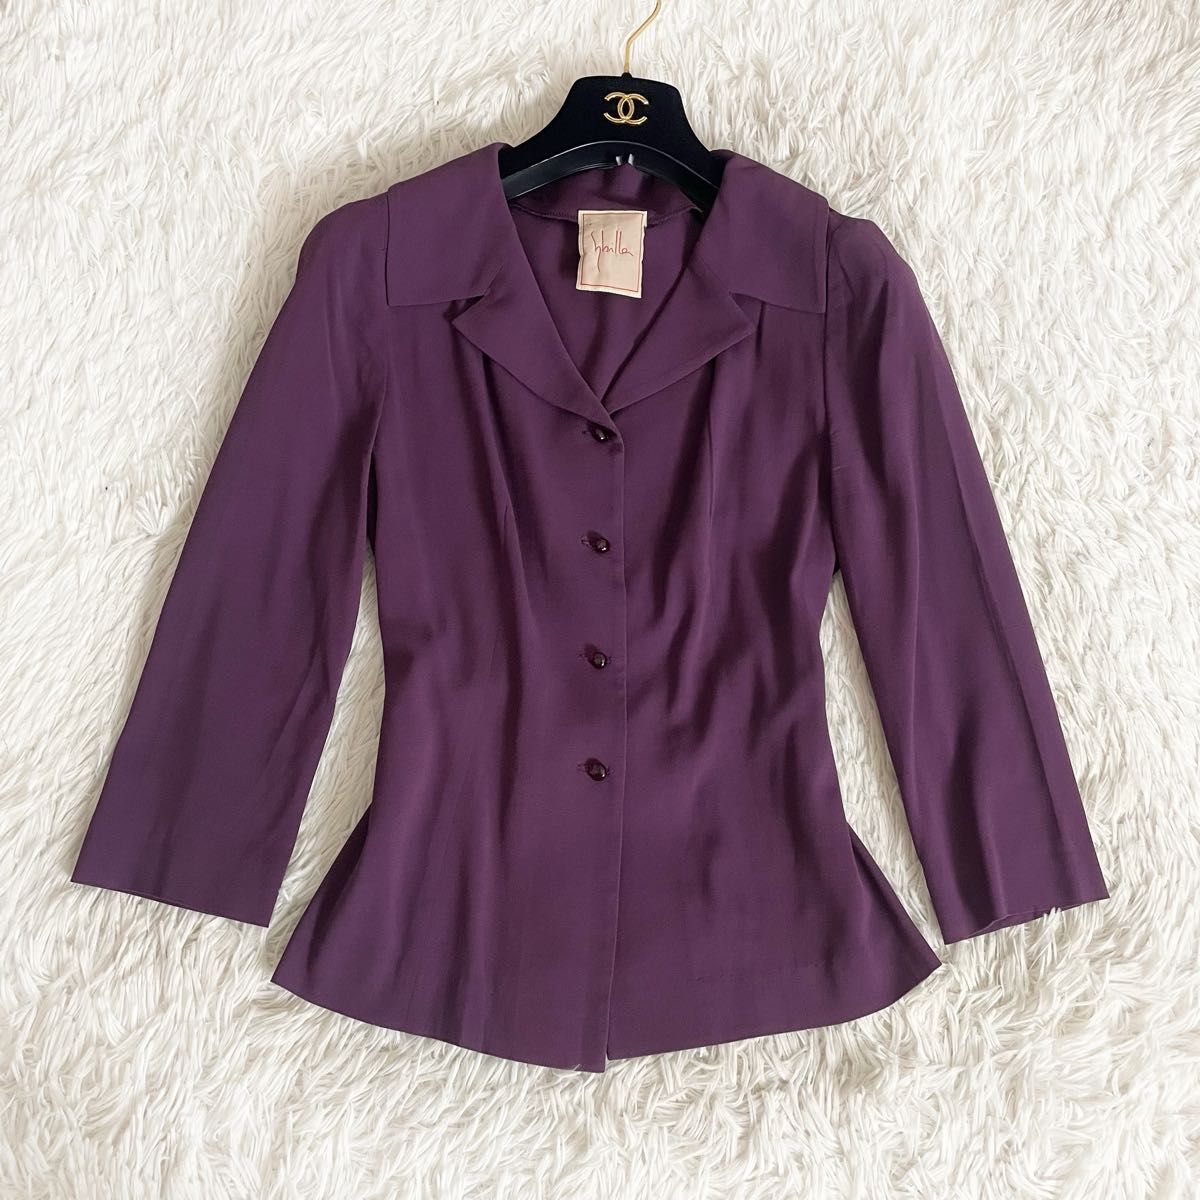 Sybilla シビラ ジャケット ワンピーススーツ セットアップ パープル 紫 ロング フォーマル  スカートスーツ セレモニー